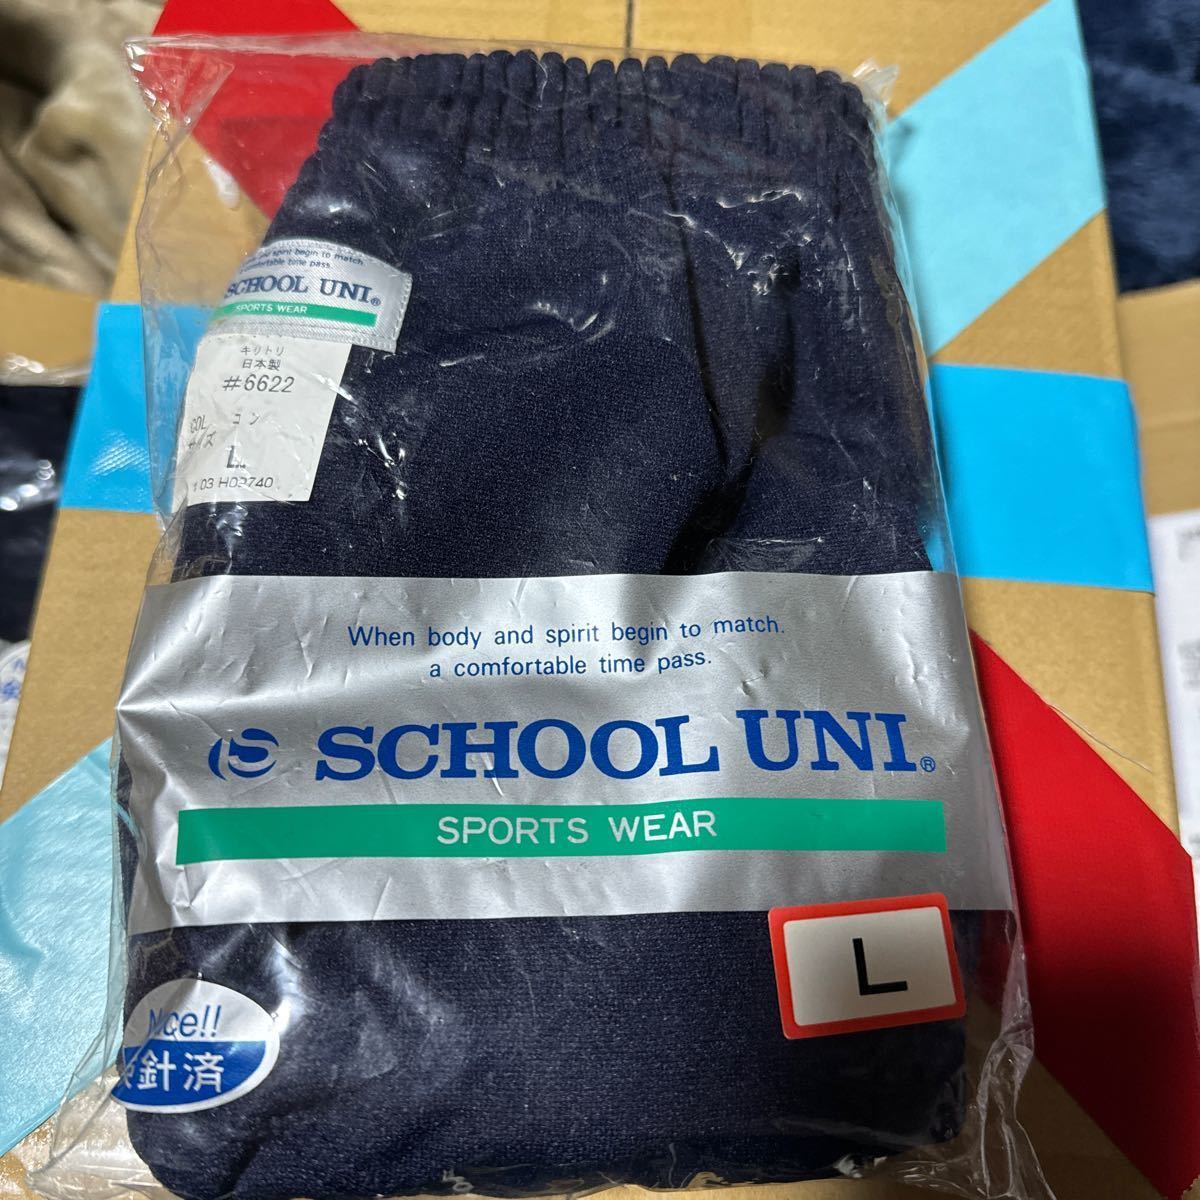  переговоры приветствуется [ новый товар ]brumabruma- спортивная форма спорт одежда .... цена сверху School Uni school Uni темно-синий темно синий 3L размер спортивная форма костюмированная игра #6622